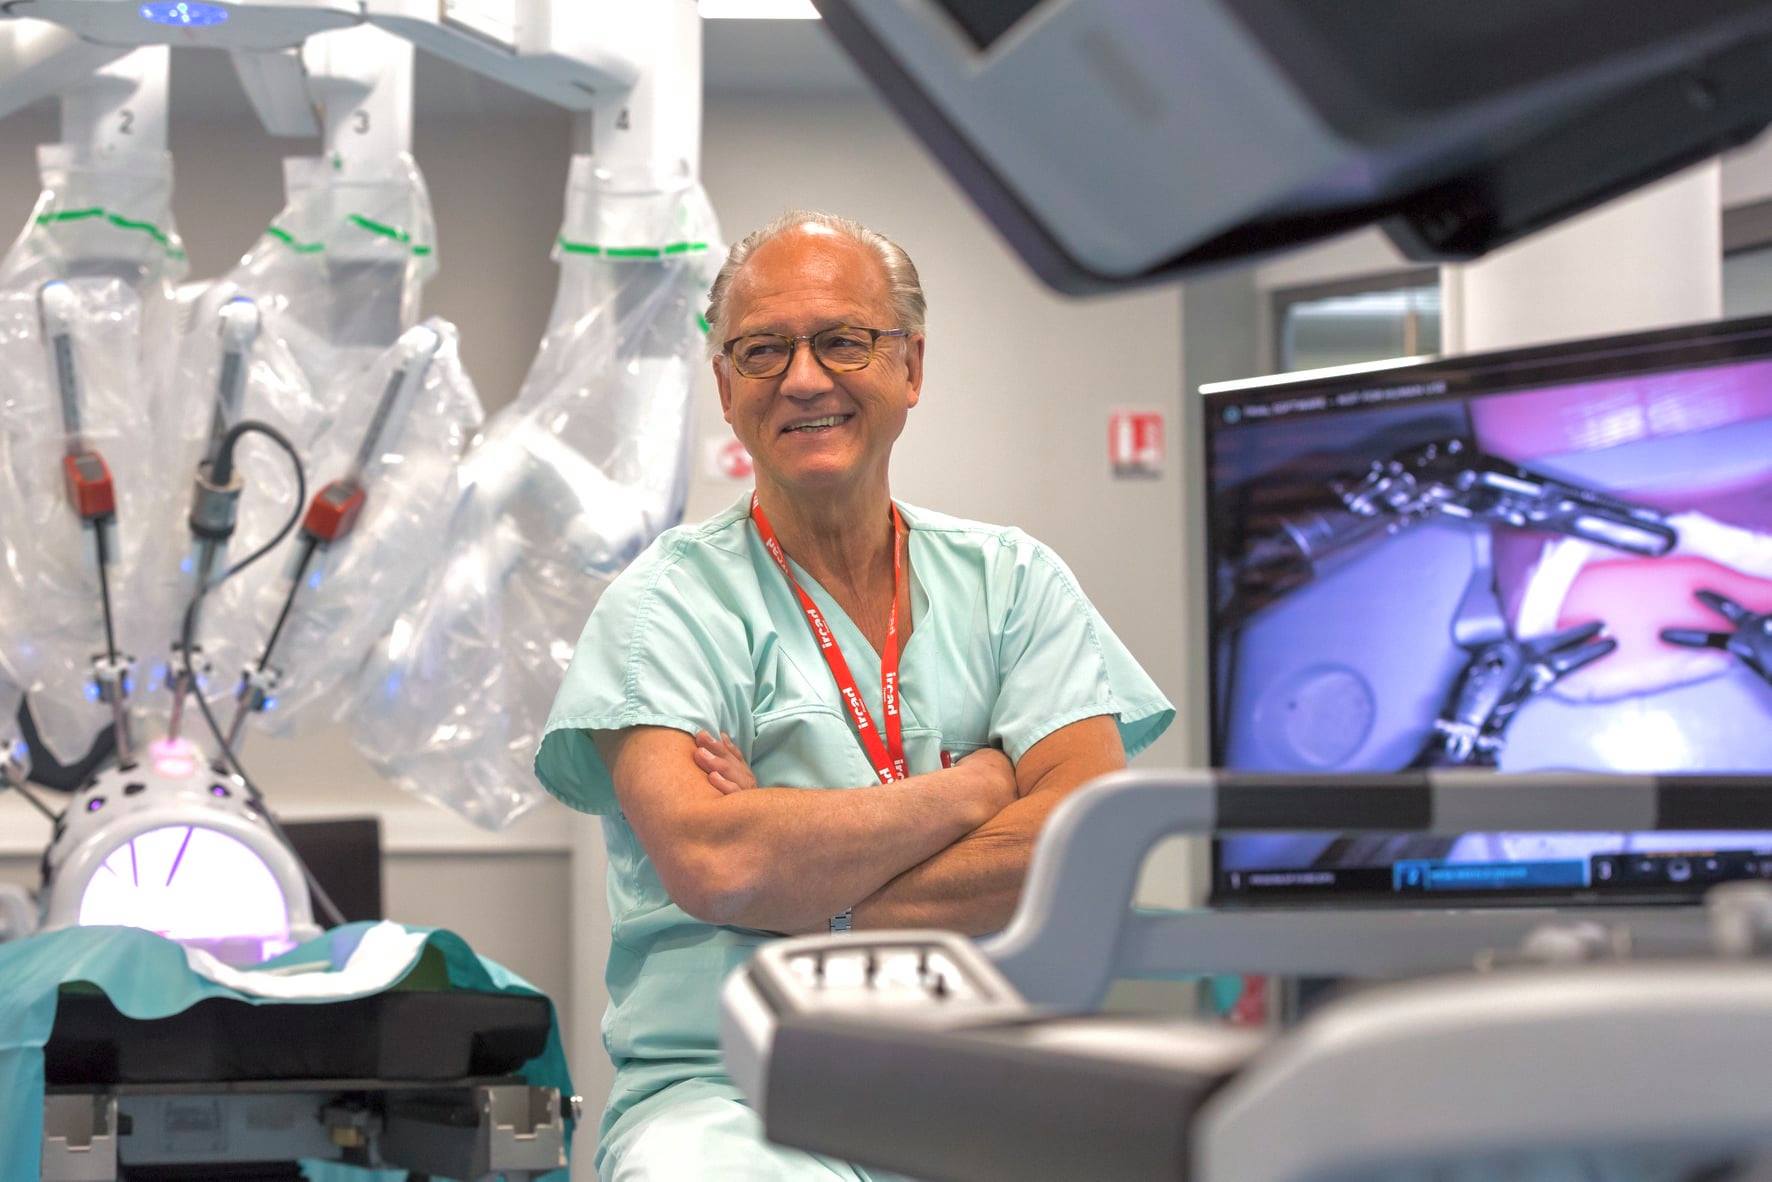 El éxito de las cirugías con robots e inteligencia artificial, según el médico que hizo la primera tele-operación transatlántica